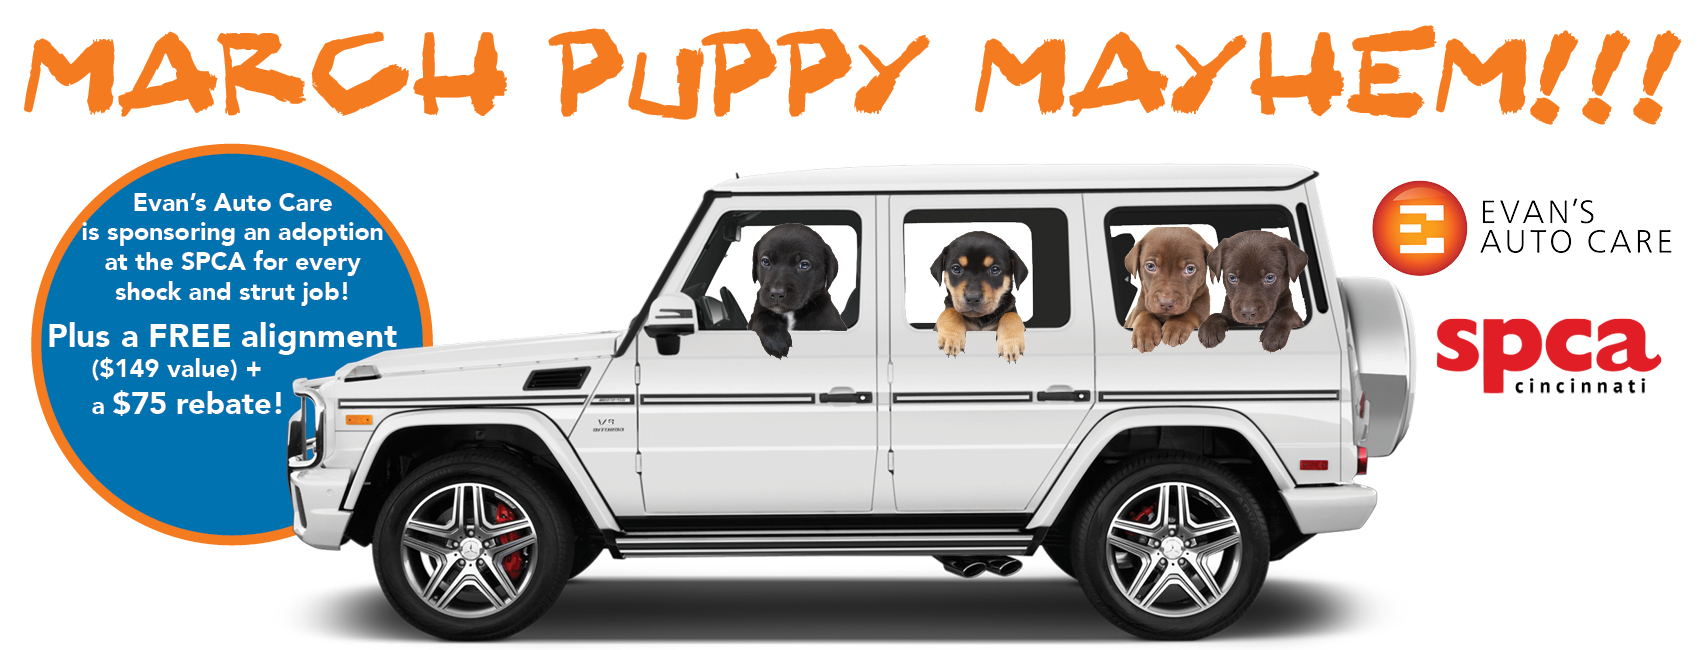 March Puppy Mayhem